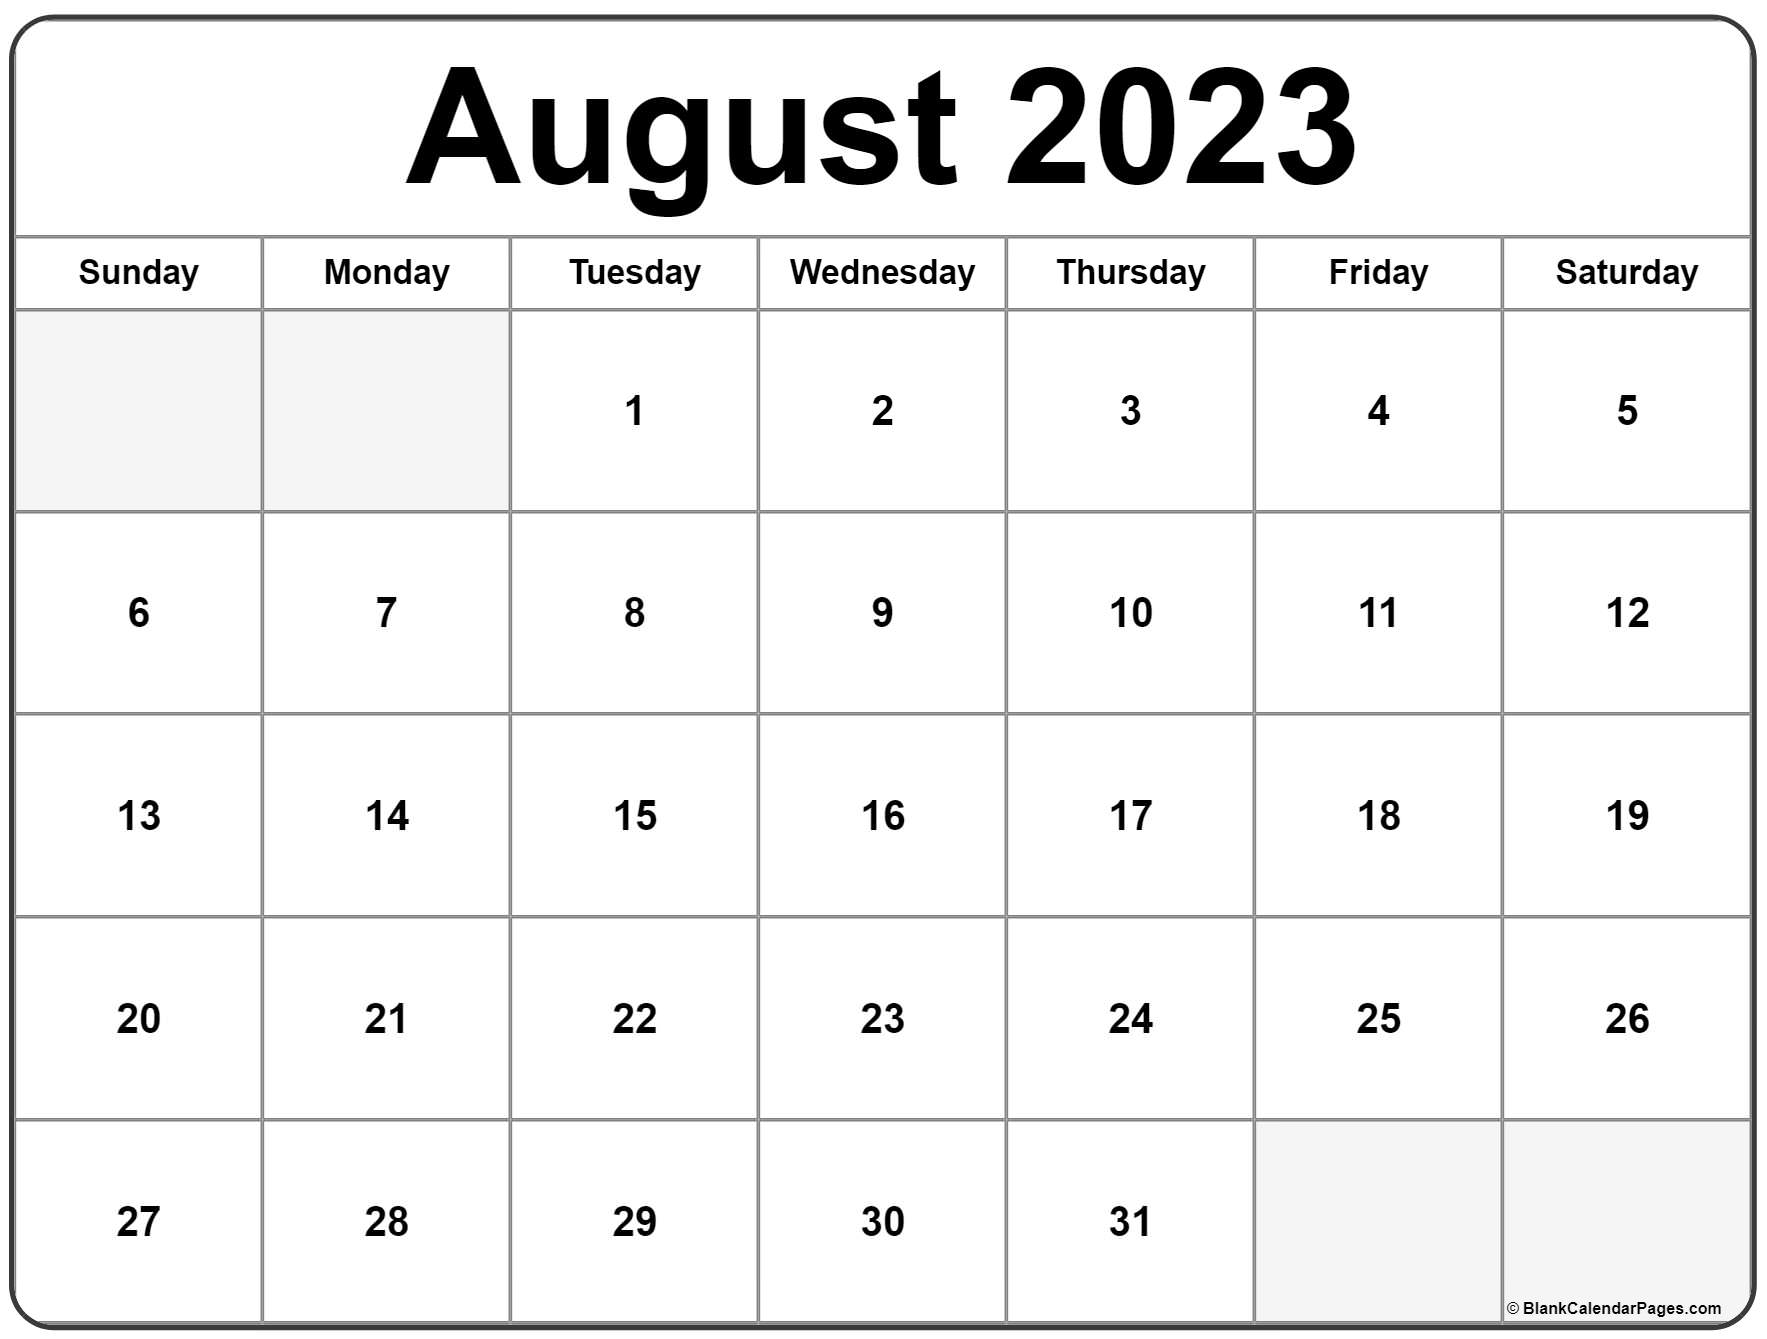 Июнь август 2023. Календарь август 2022. Календарь июнь 2022. Календарь июль август 2022. Календарь на август 2022 года.